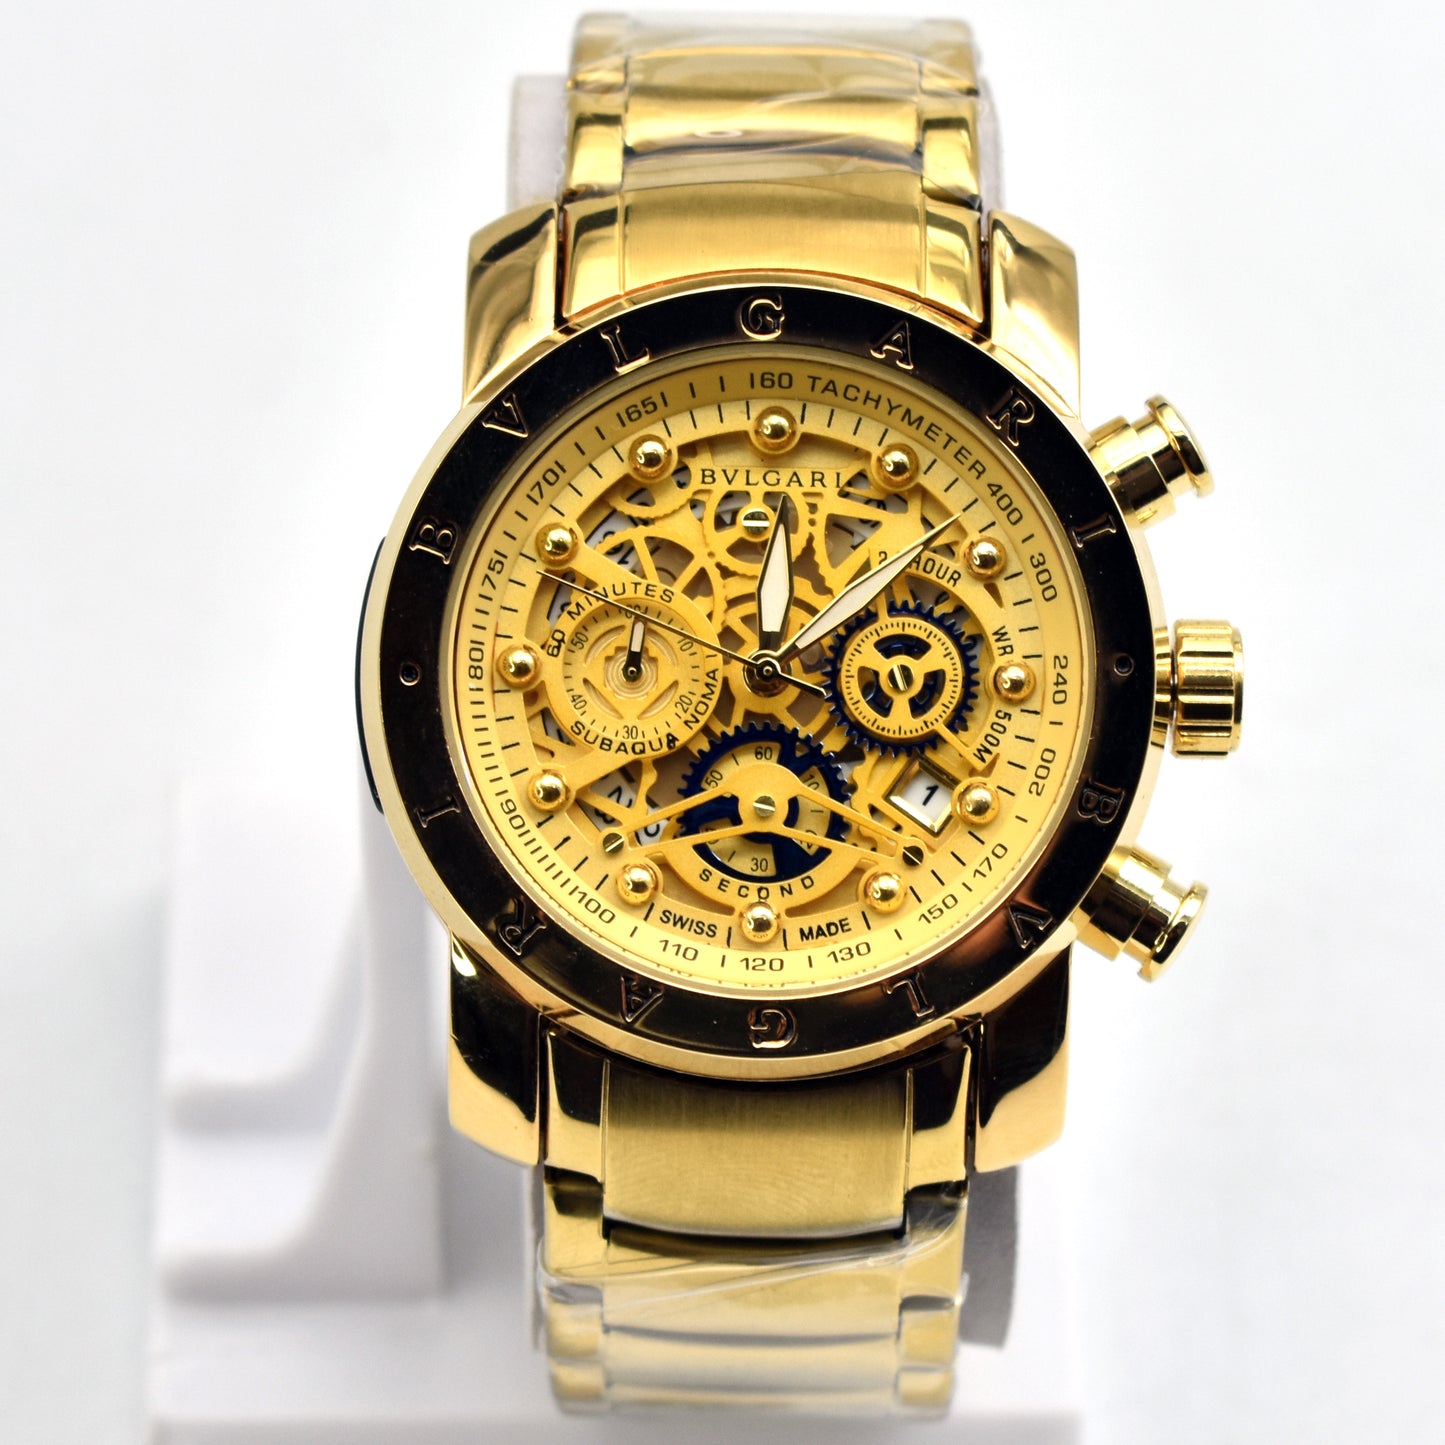 Luxury Premium Quality Watch - Vlgari Watch 01